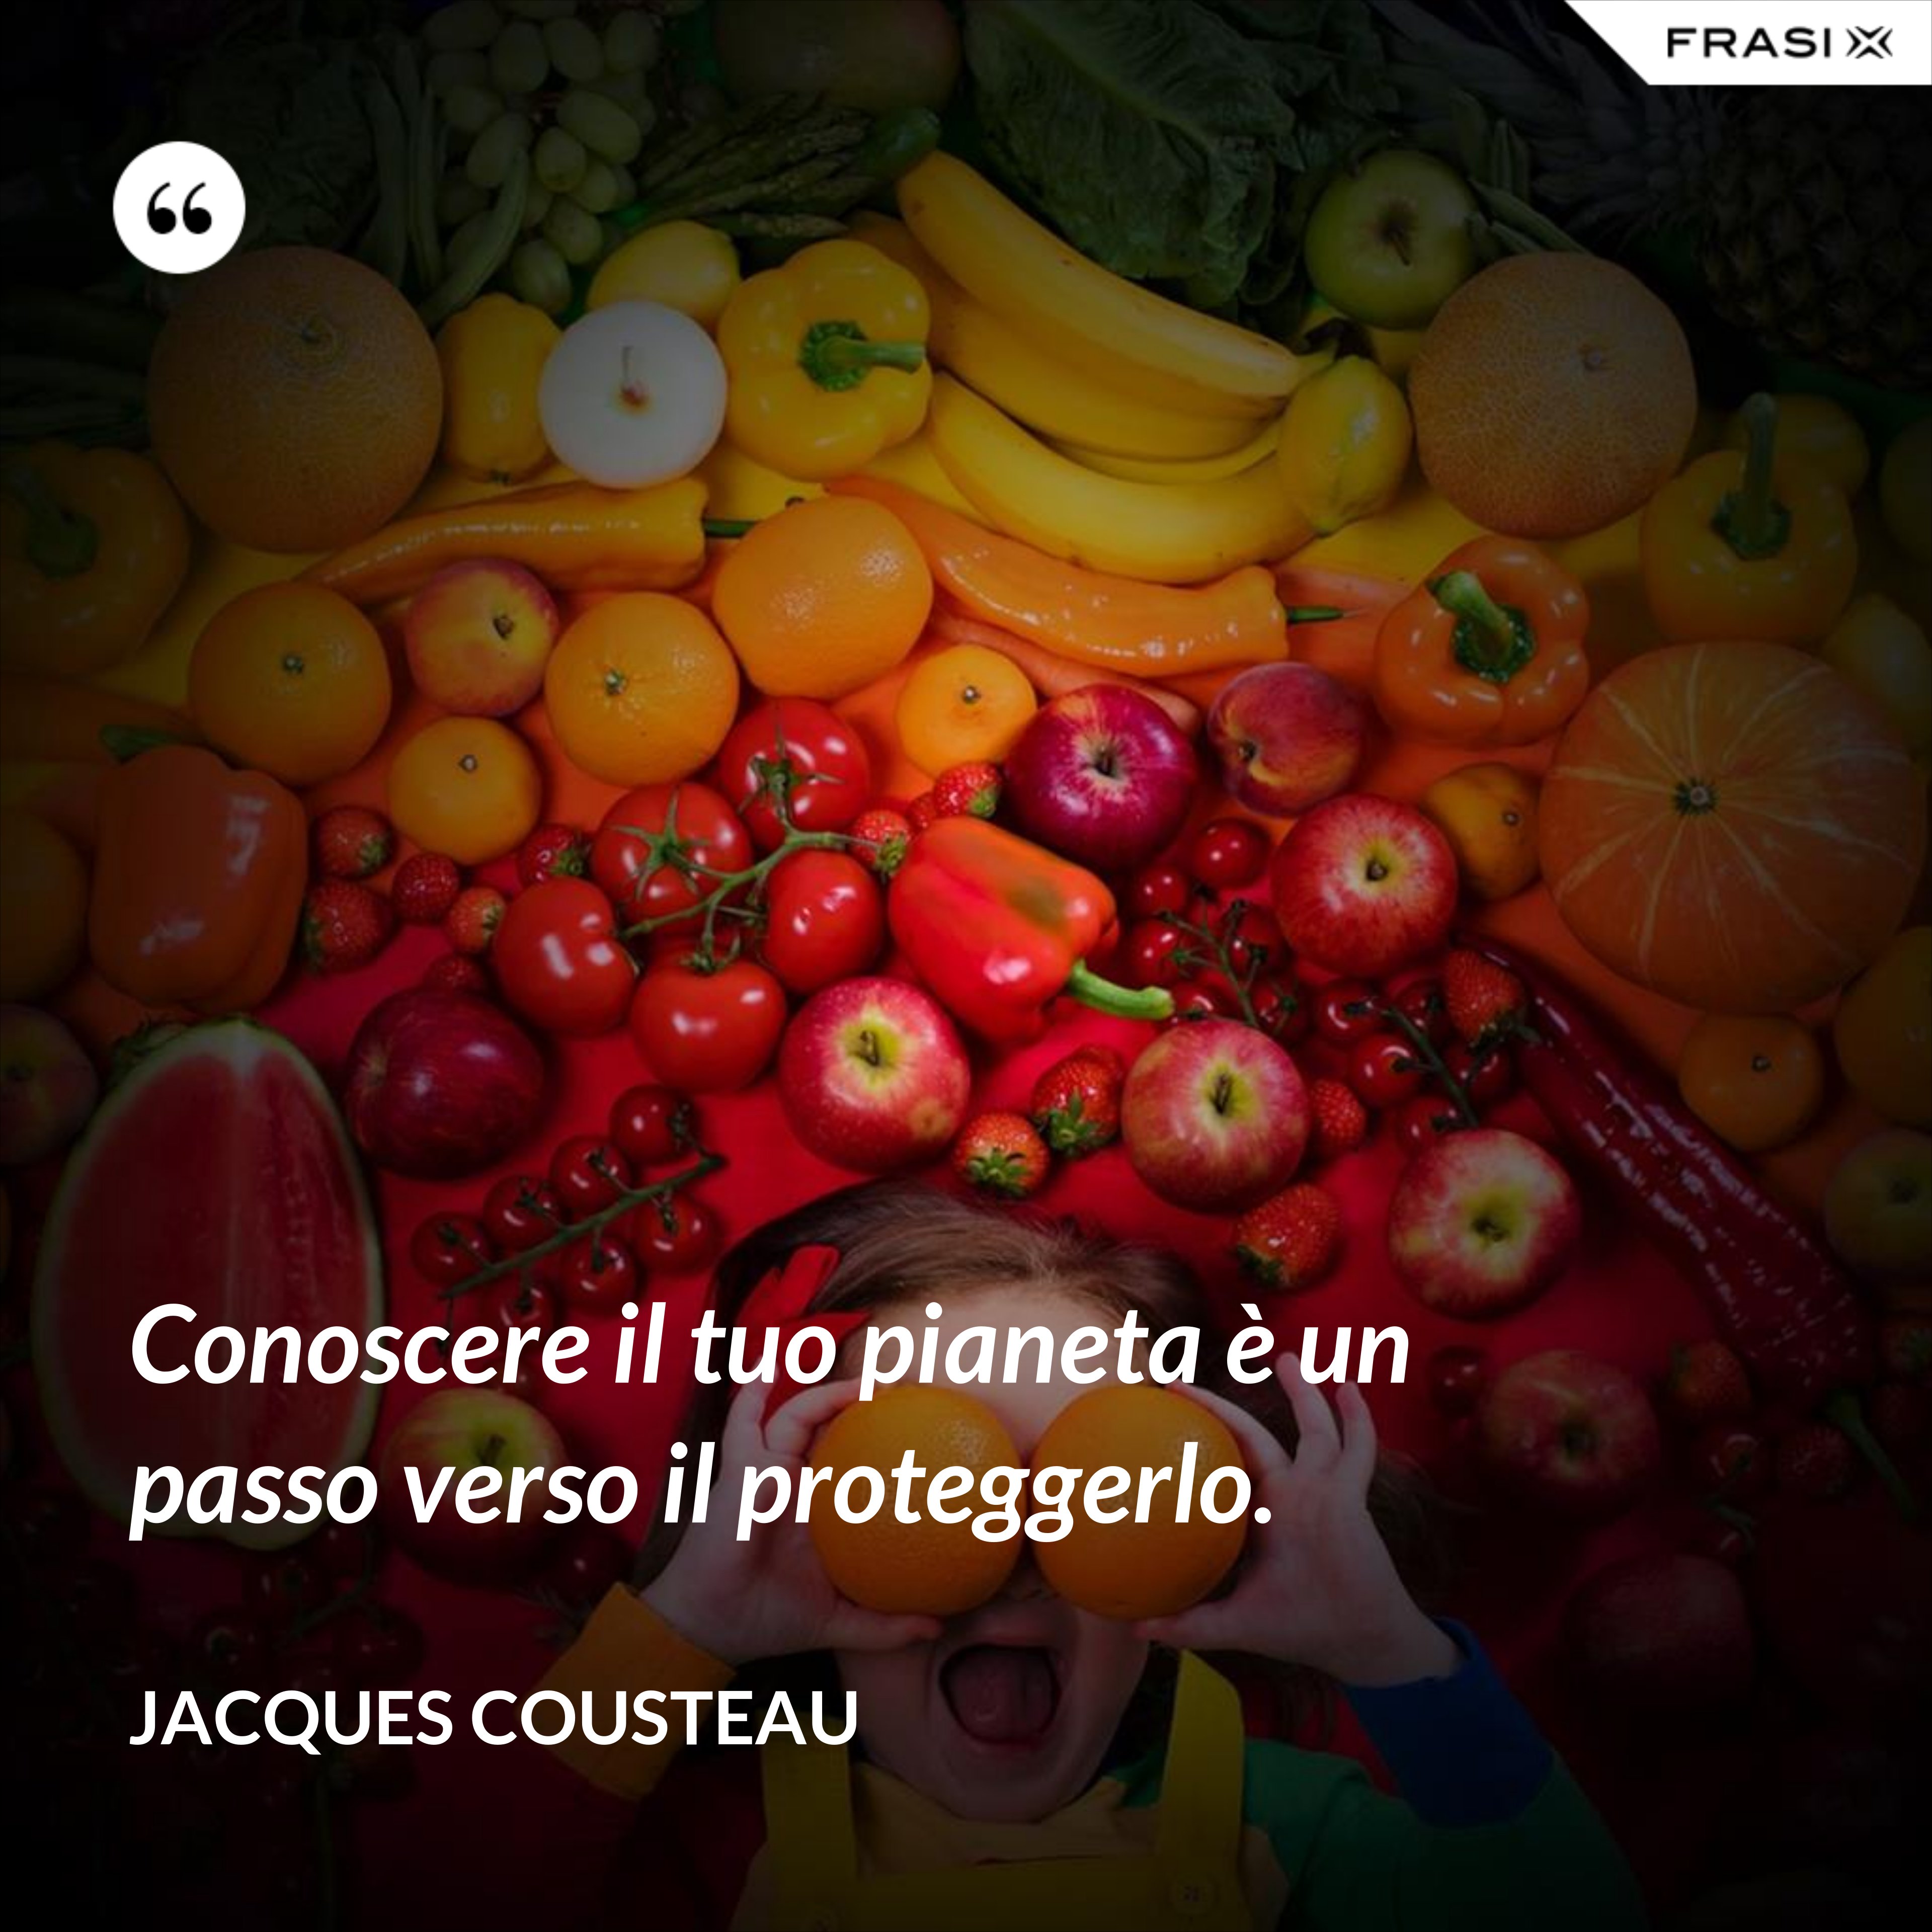 Conoscere il tuo pianeta è un passo verso il proteggerlo. - Jacques Cousteau